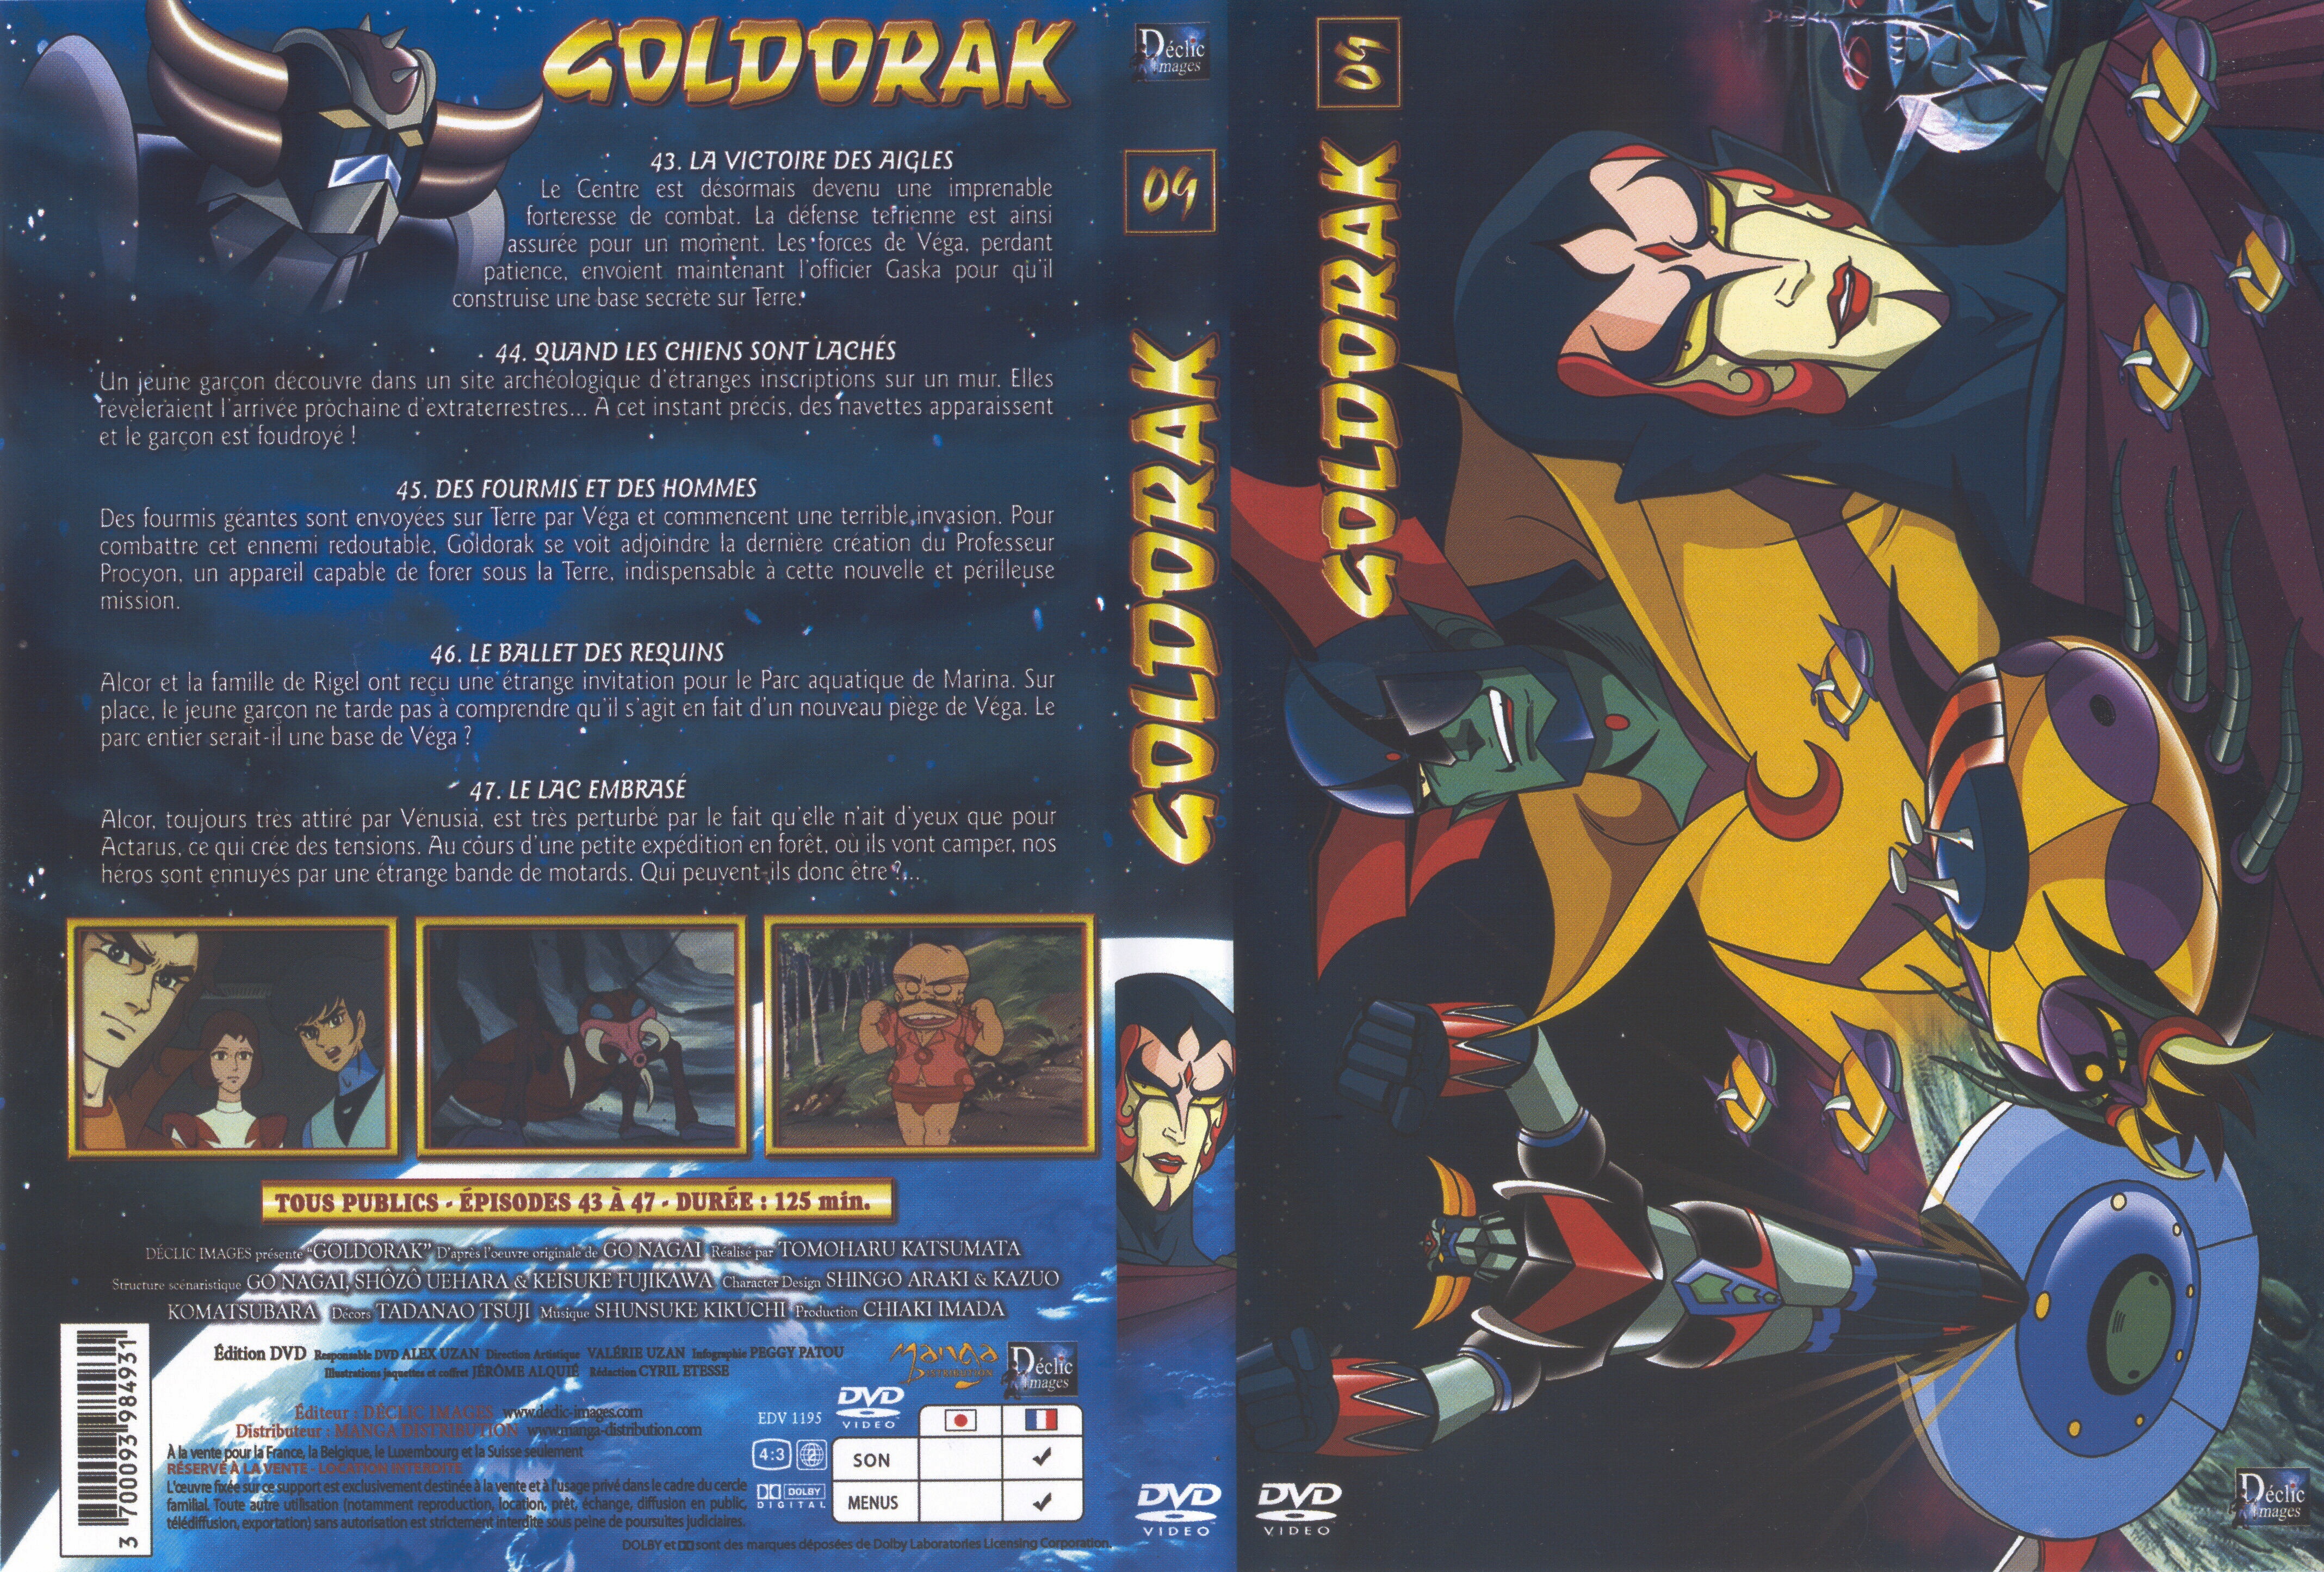 Jaquette DVD Goldorak vol 09